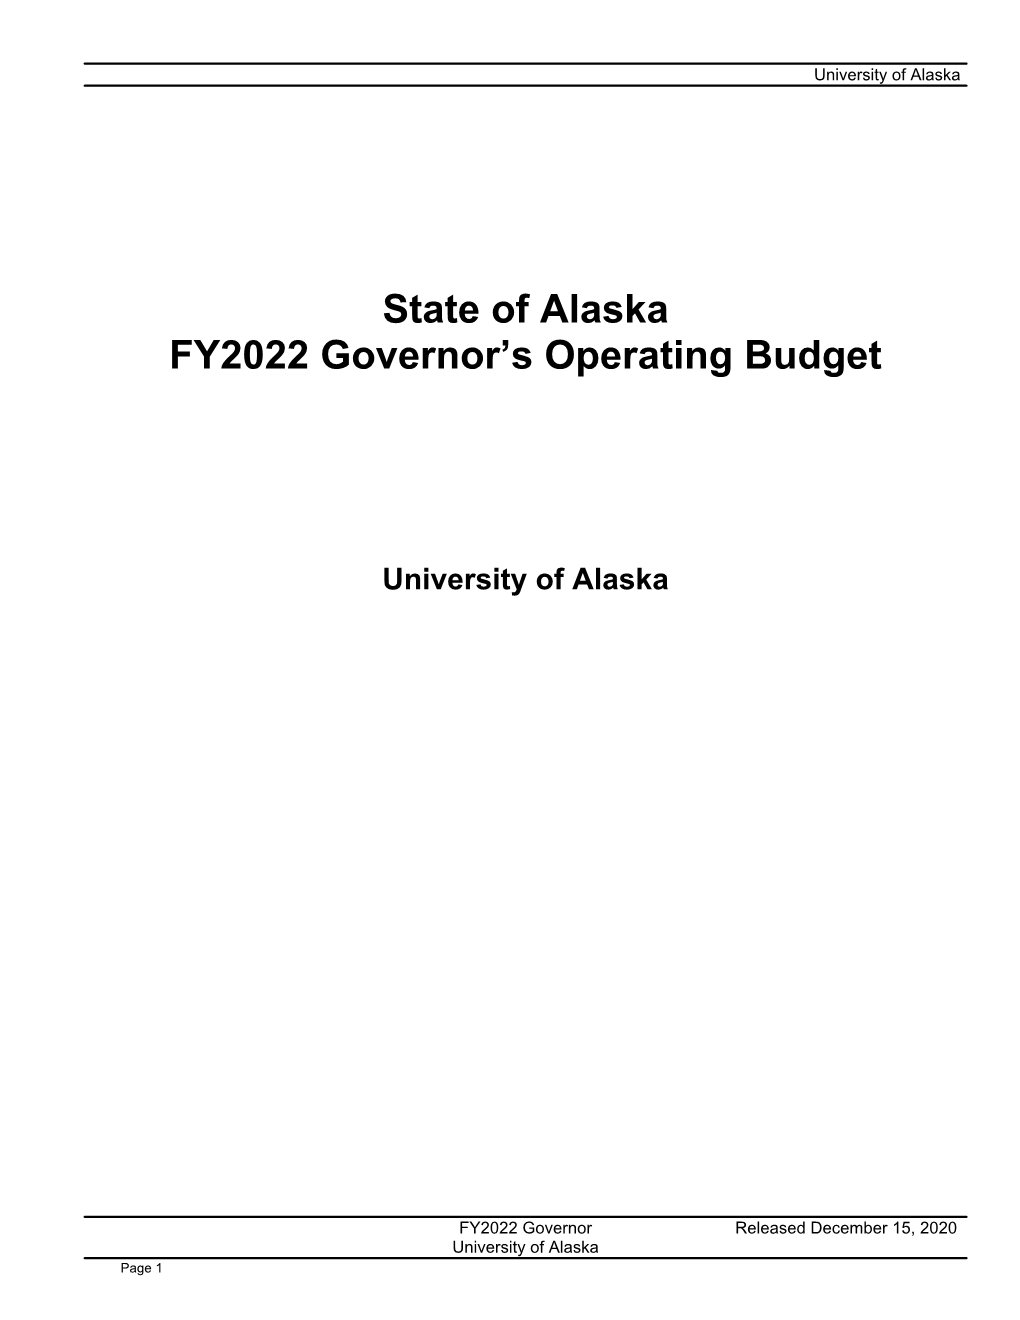 FY22 Governor Budget Book UA